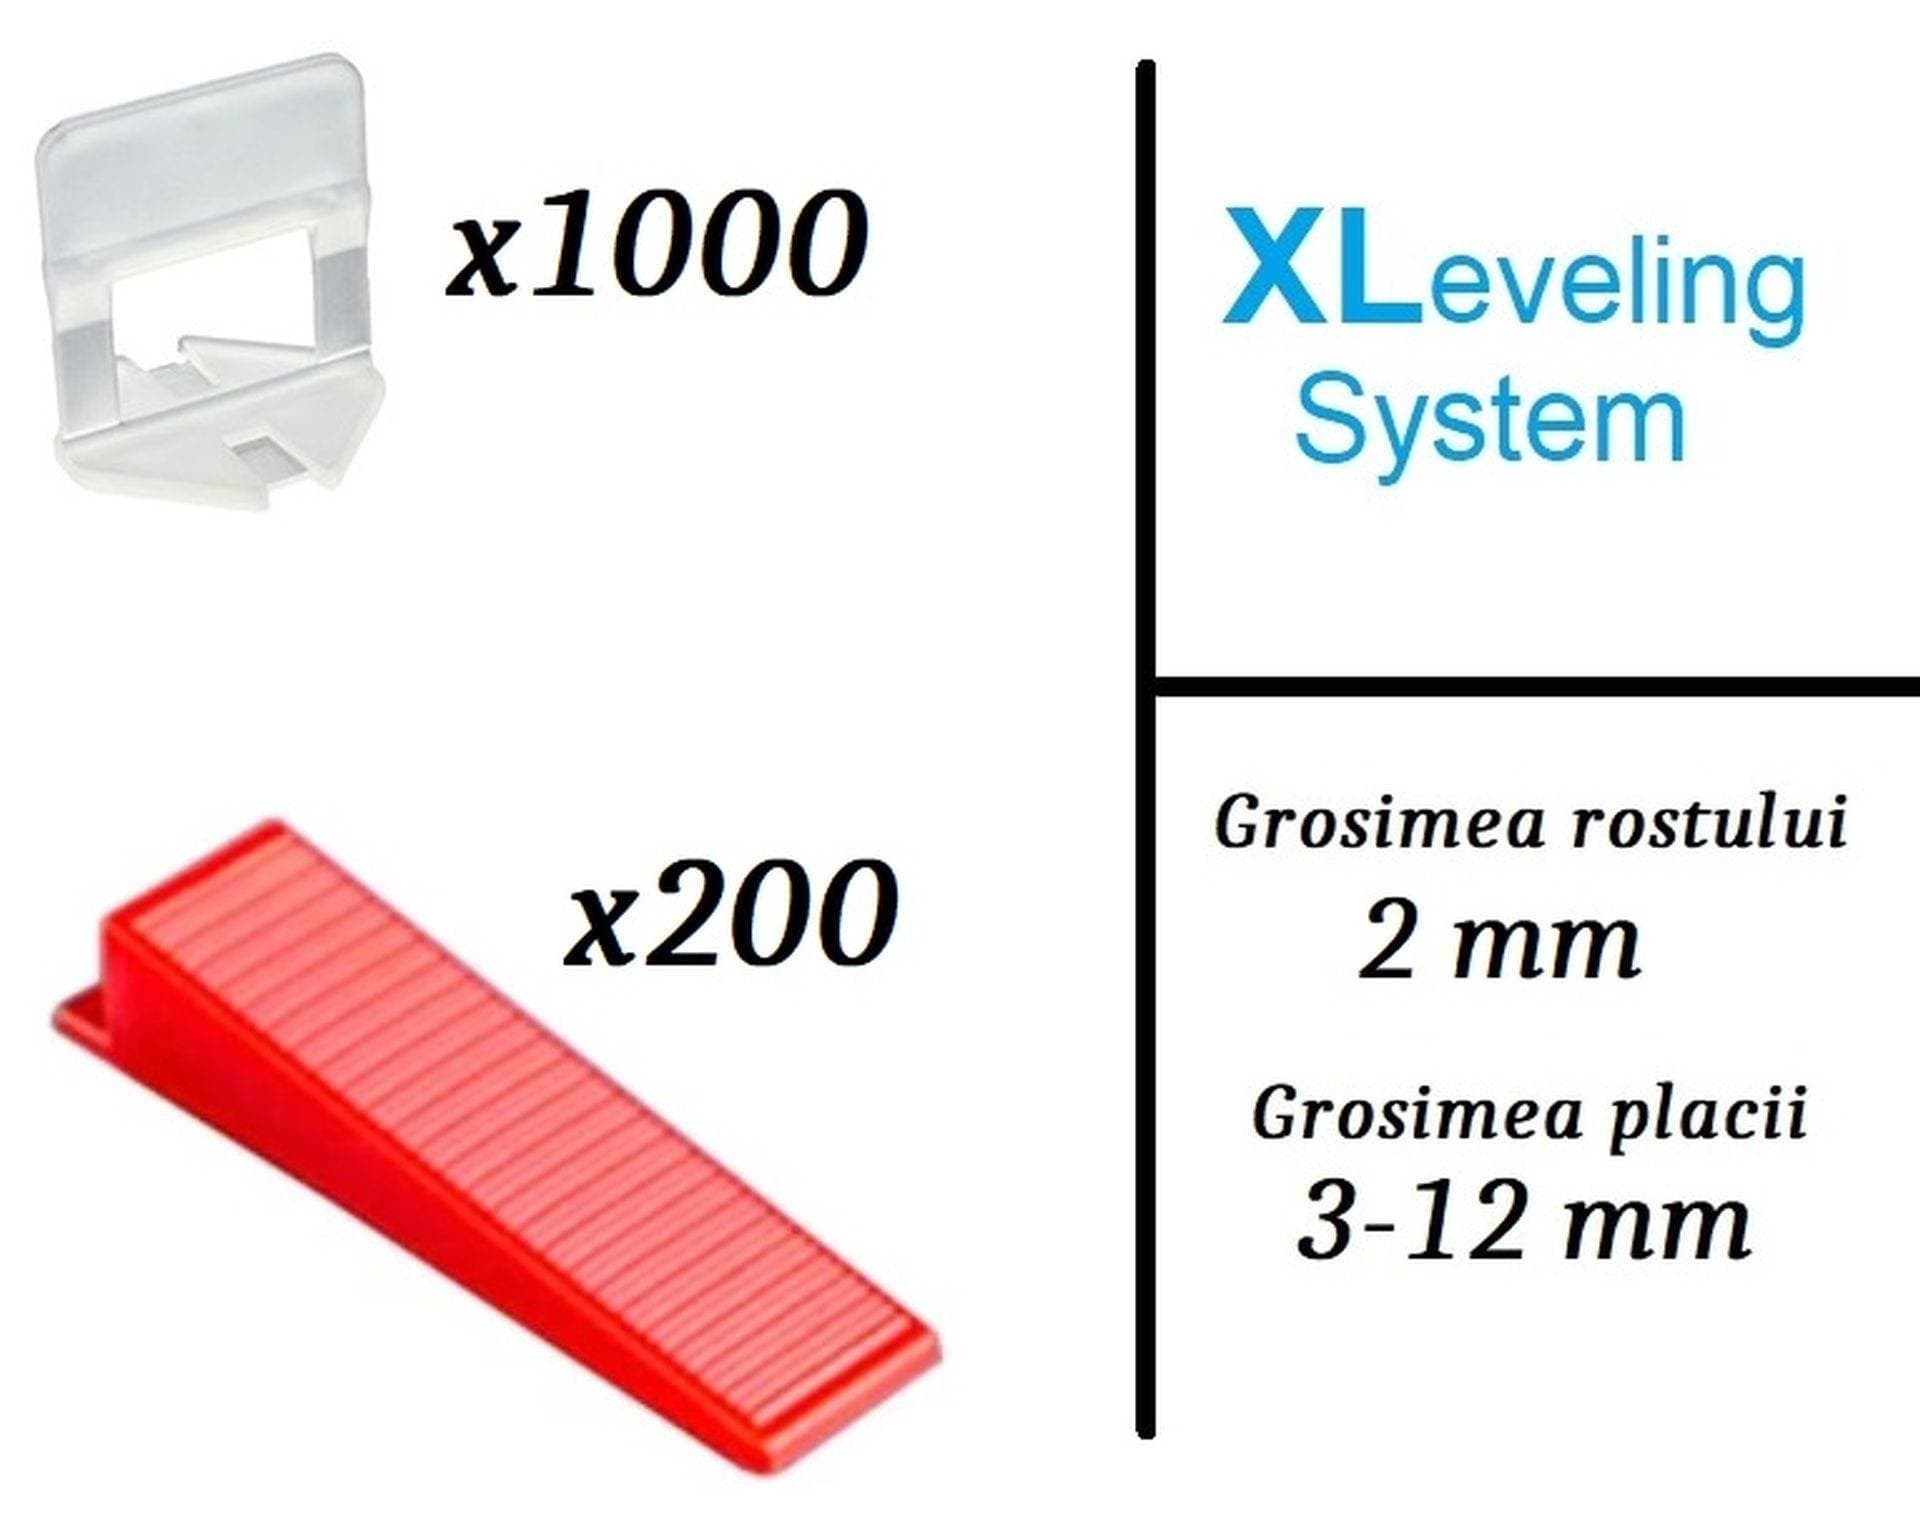 Pachet XLeveling PROFESIONAL, 2mm - nivelare gresie si faianta (1000Clips+200Pene)